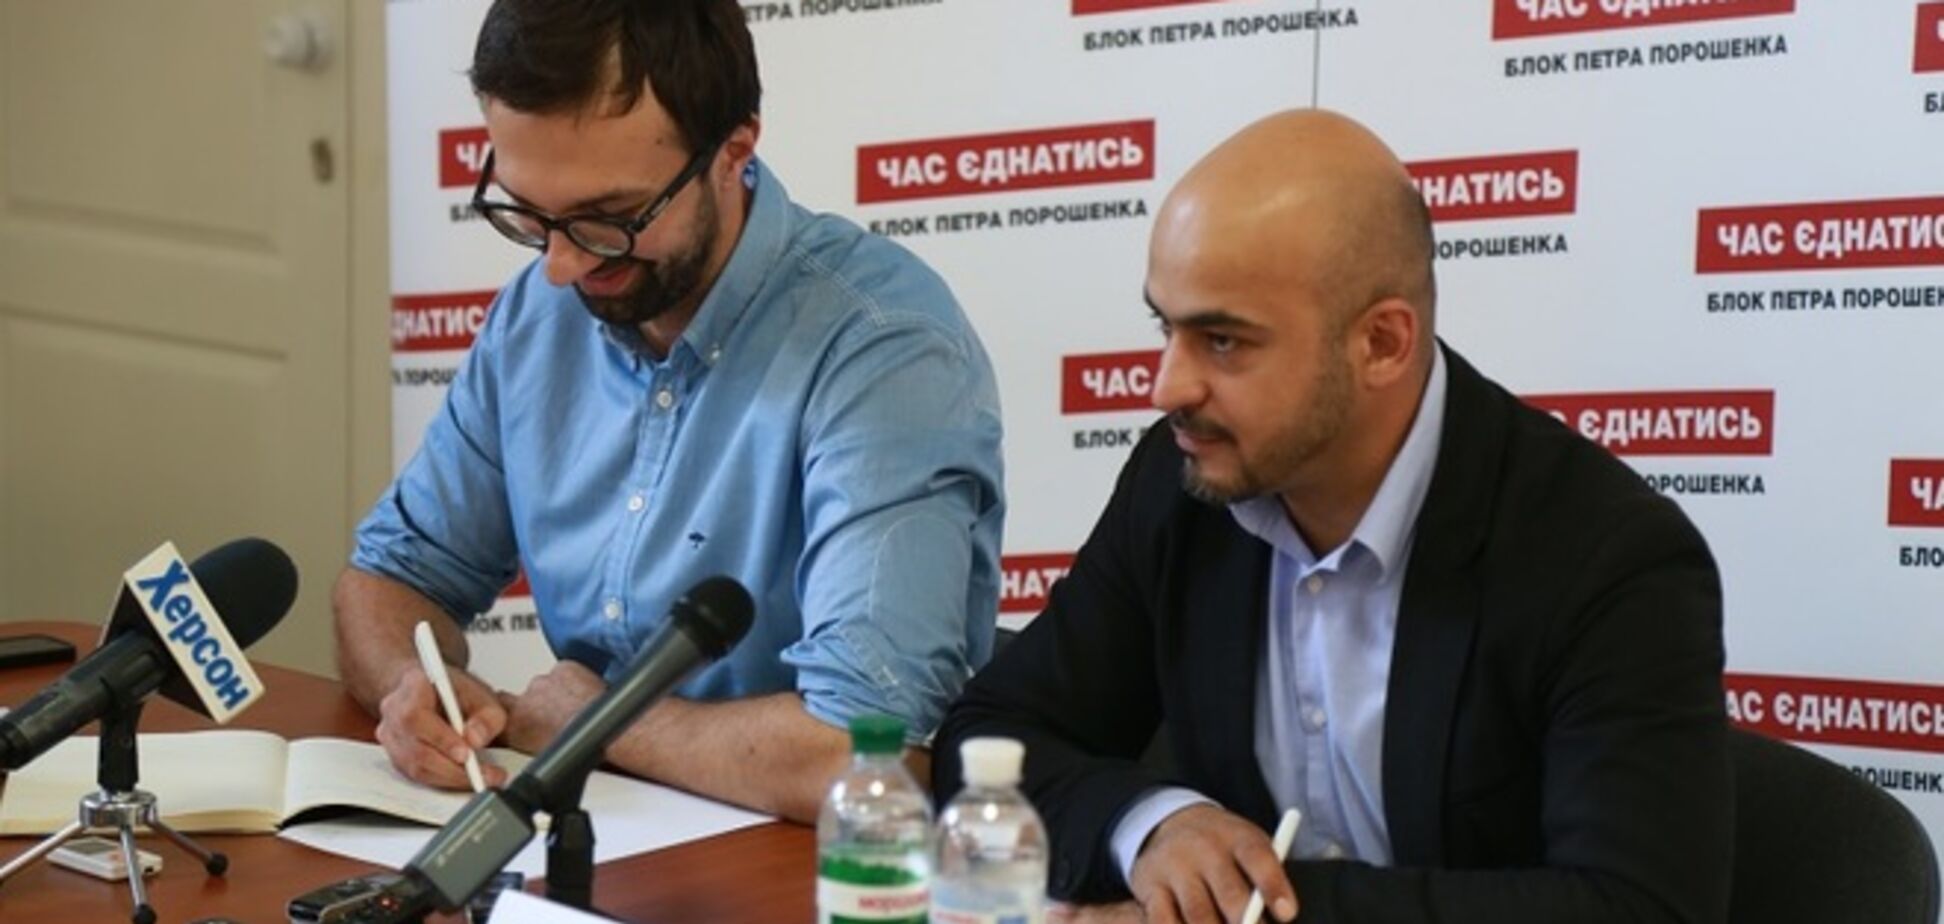 Найем и Лещенко рассказали о гречке на выборах: остаемся противниками подкупа избирателей!